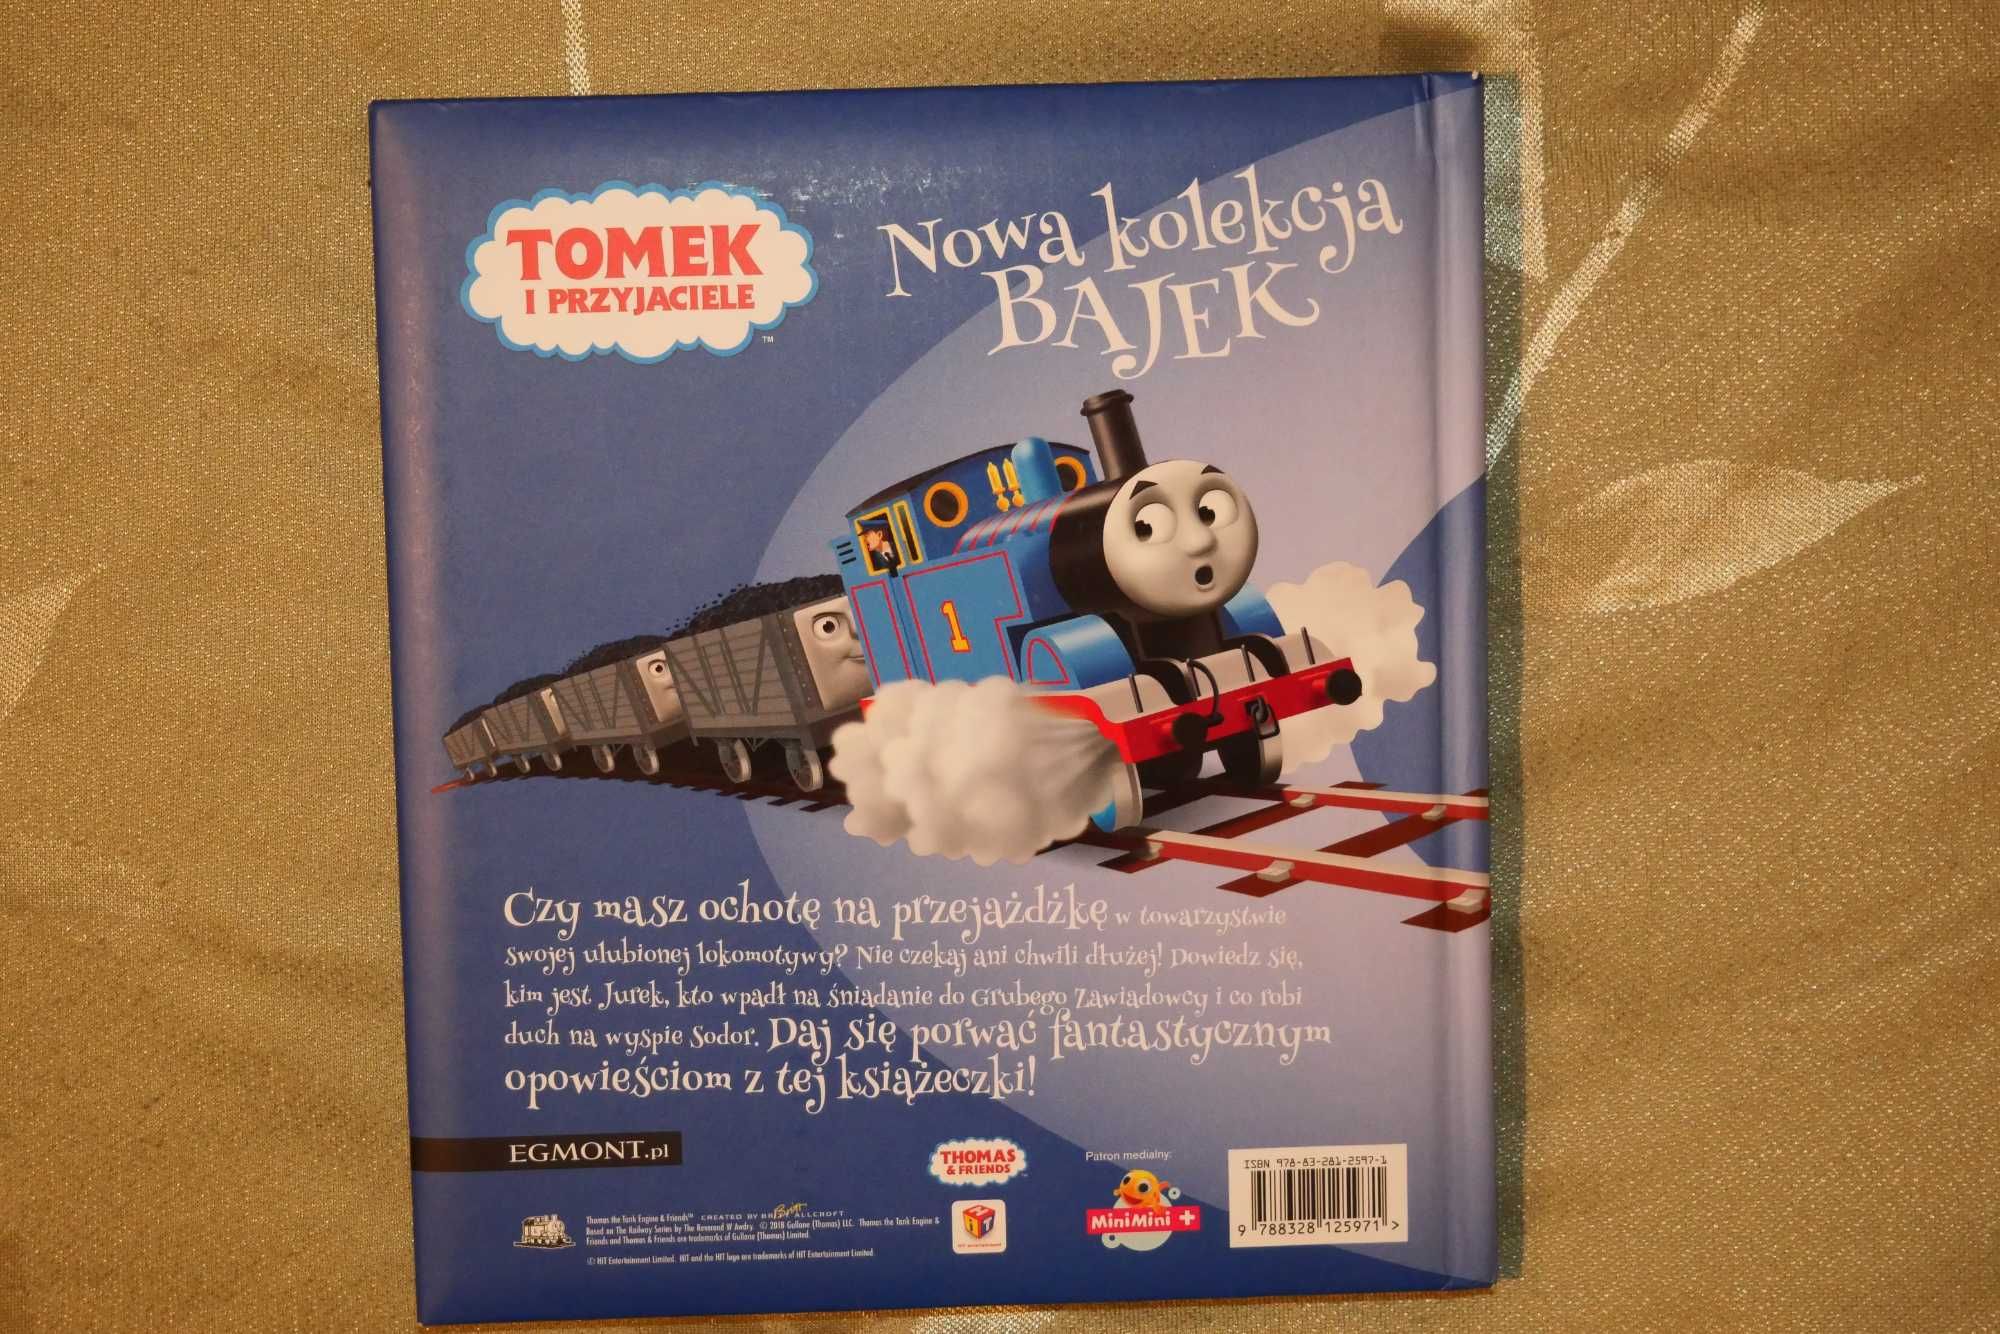 Nowa kolekcja bajek Tomek i Przyjaciele Egmont książka bajk dla dzieci